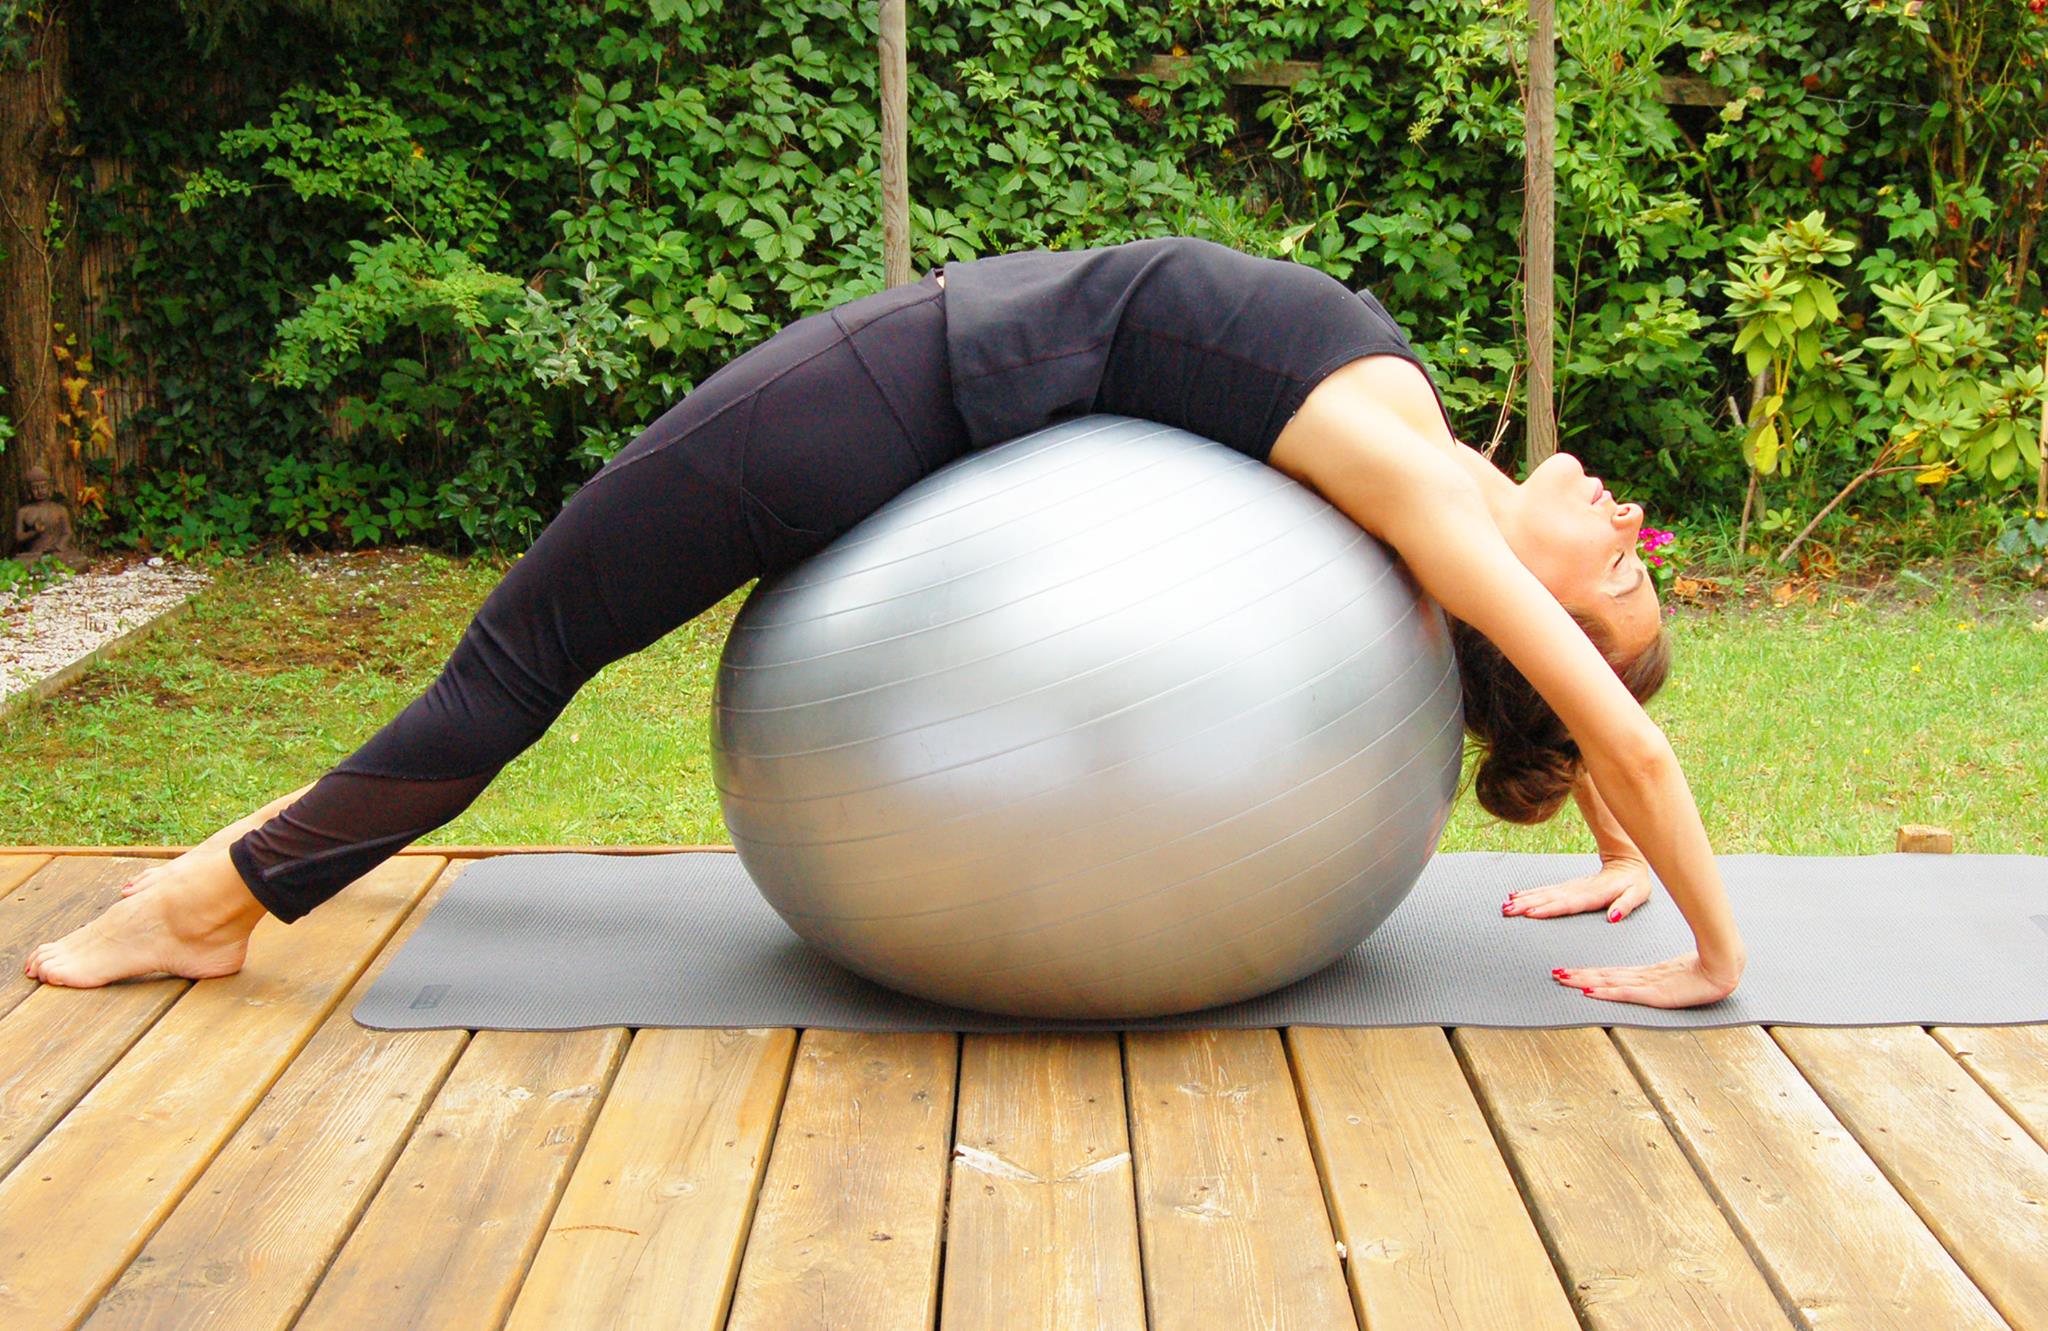 Comment maigrir du ventre avec un ballon de gym ? - Le blog